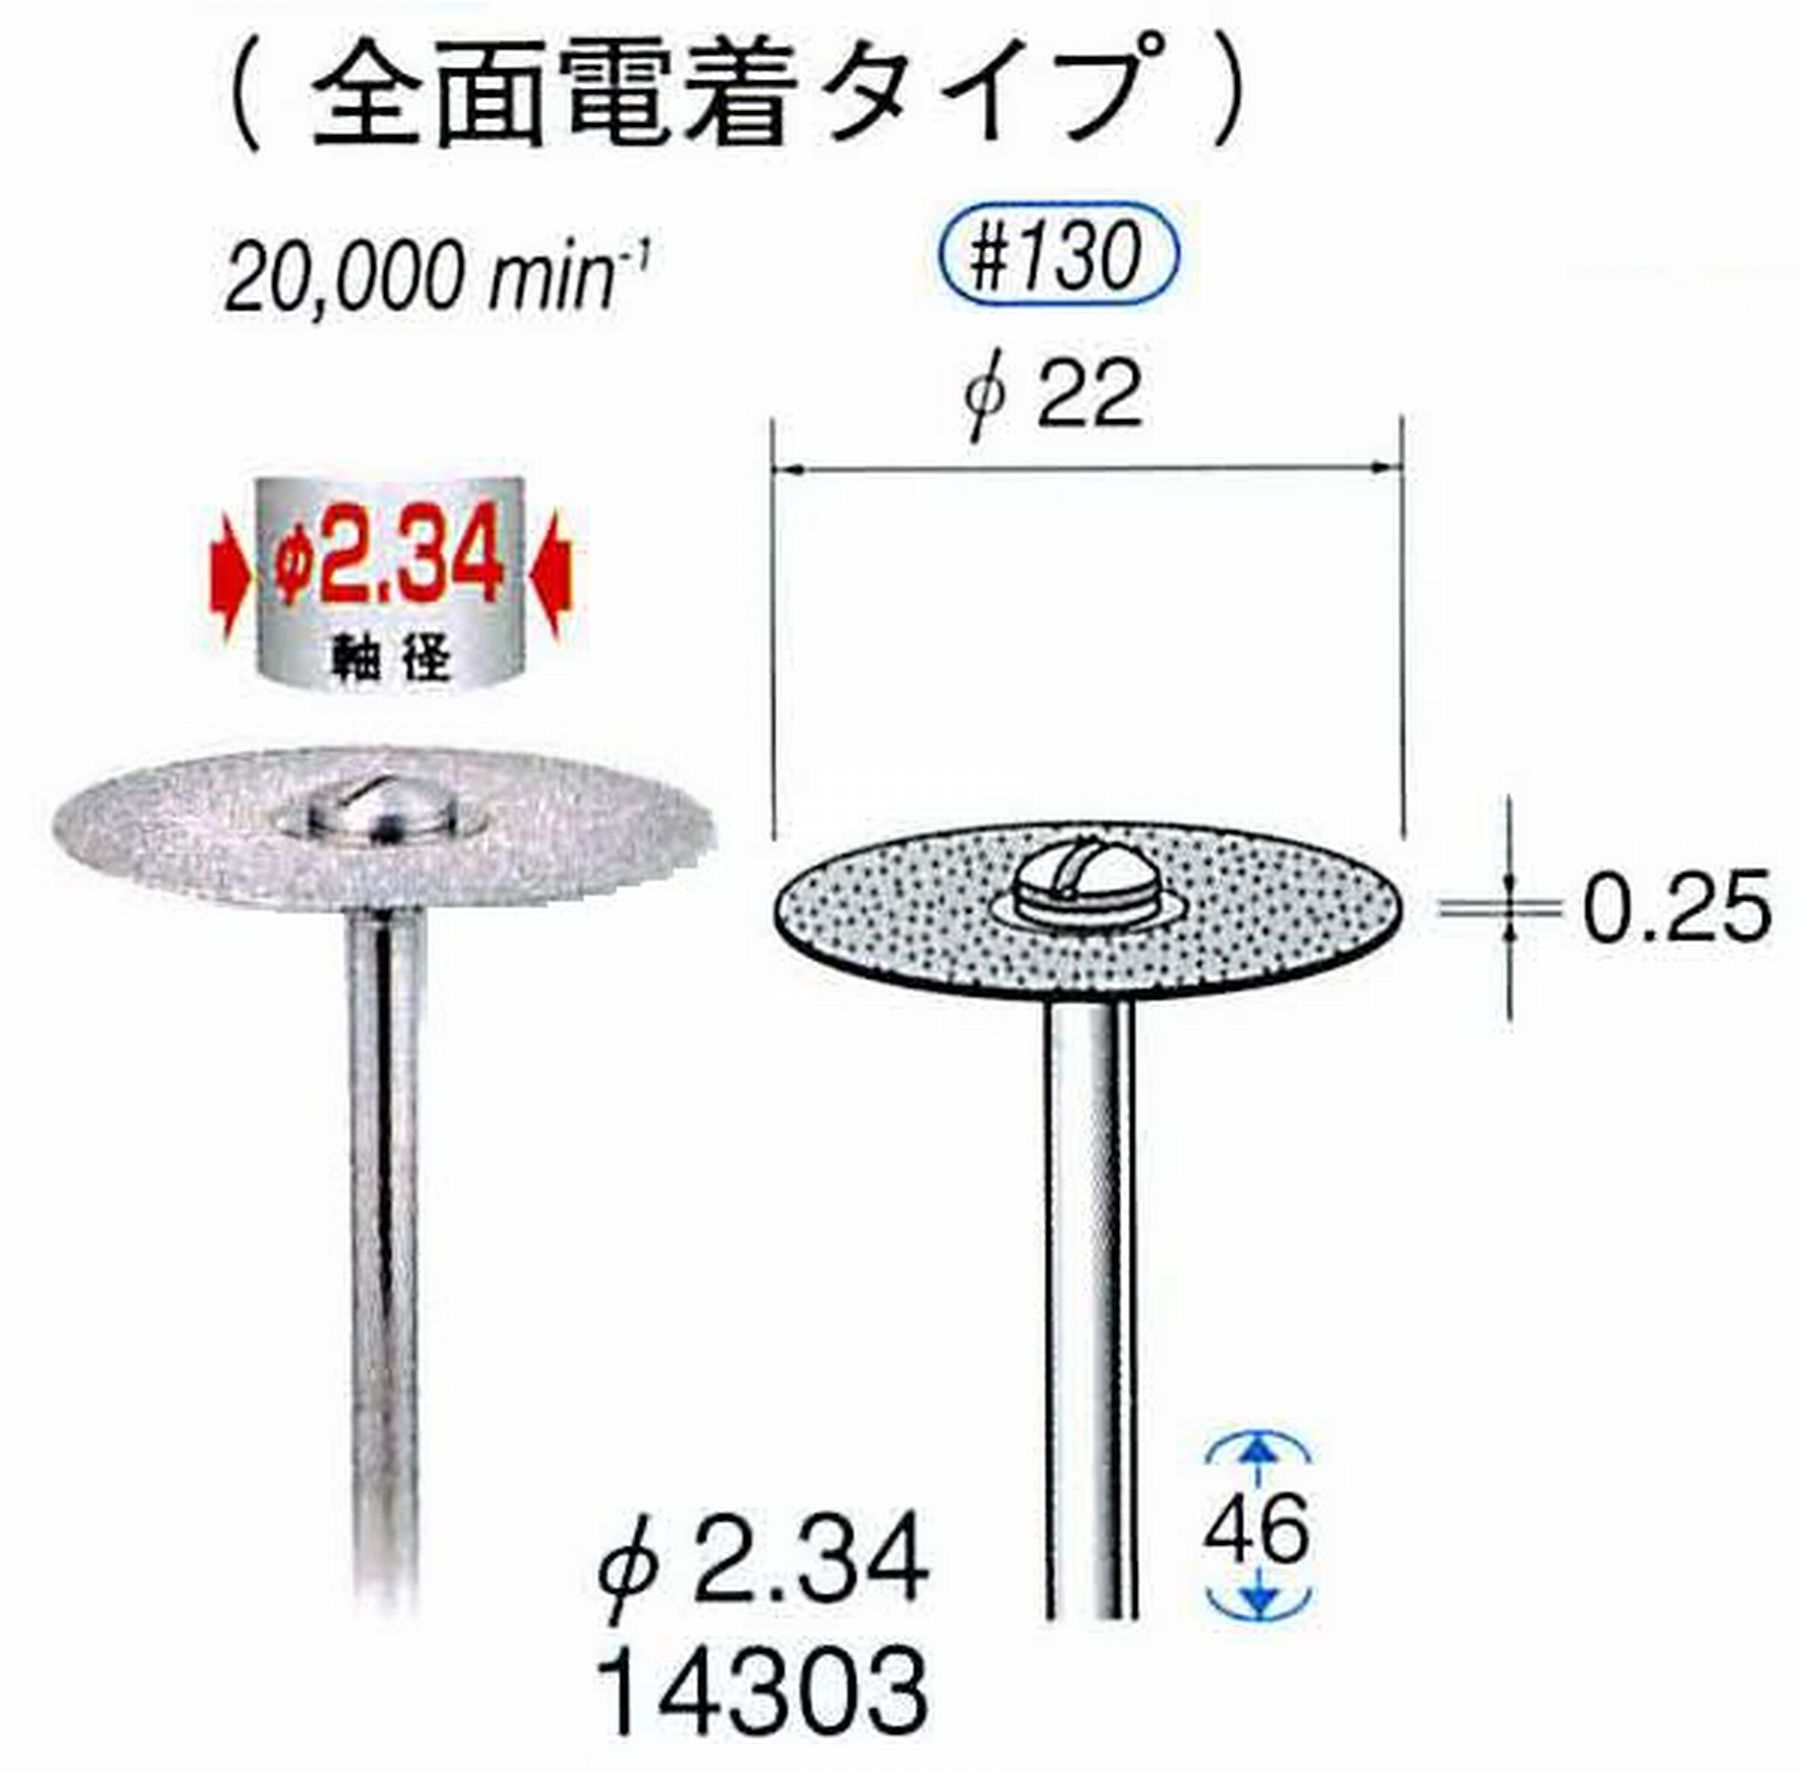 ナカニシ/NAKANISHI ダイヤモンドカッティングディスク 電着タイプ 軸径(シャンク)φ2.34mm 14303